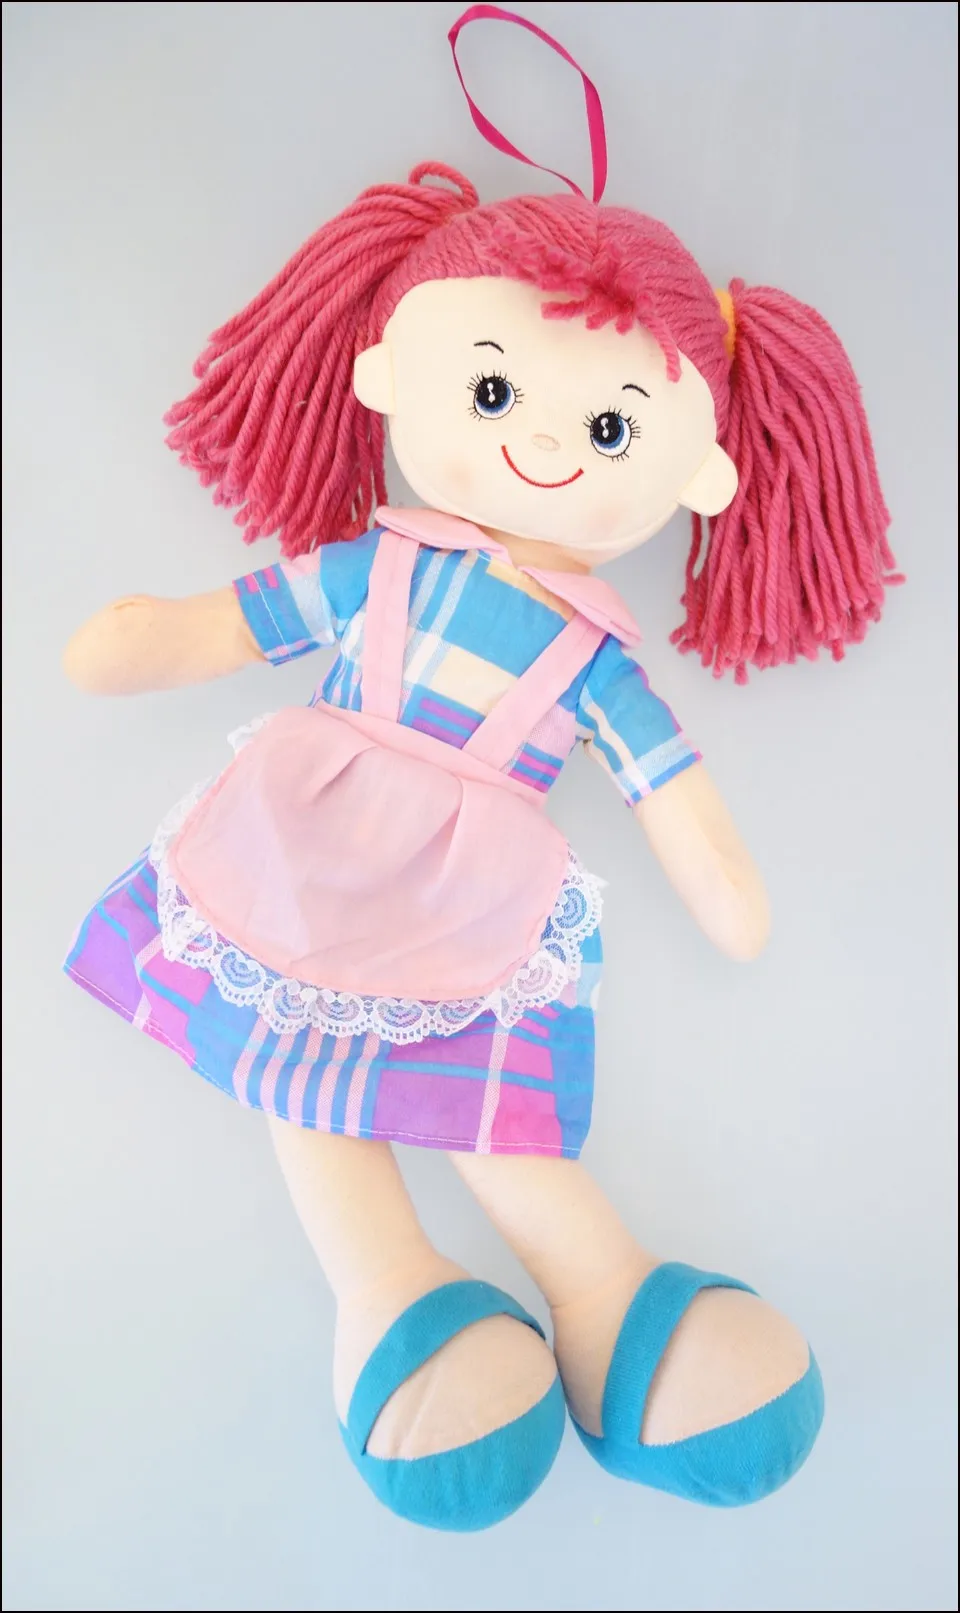 In. Grace, супер красивые куклы для девочек, тканевые куклы в сетку, машинная стирка, безопасные для детей, 4 цвета, золотые игрушки с большими глазами